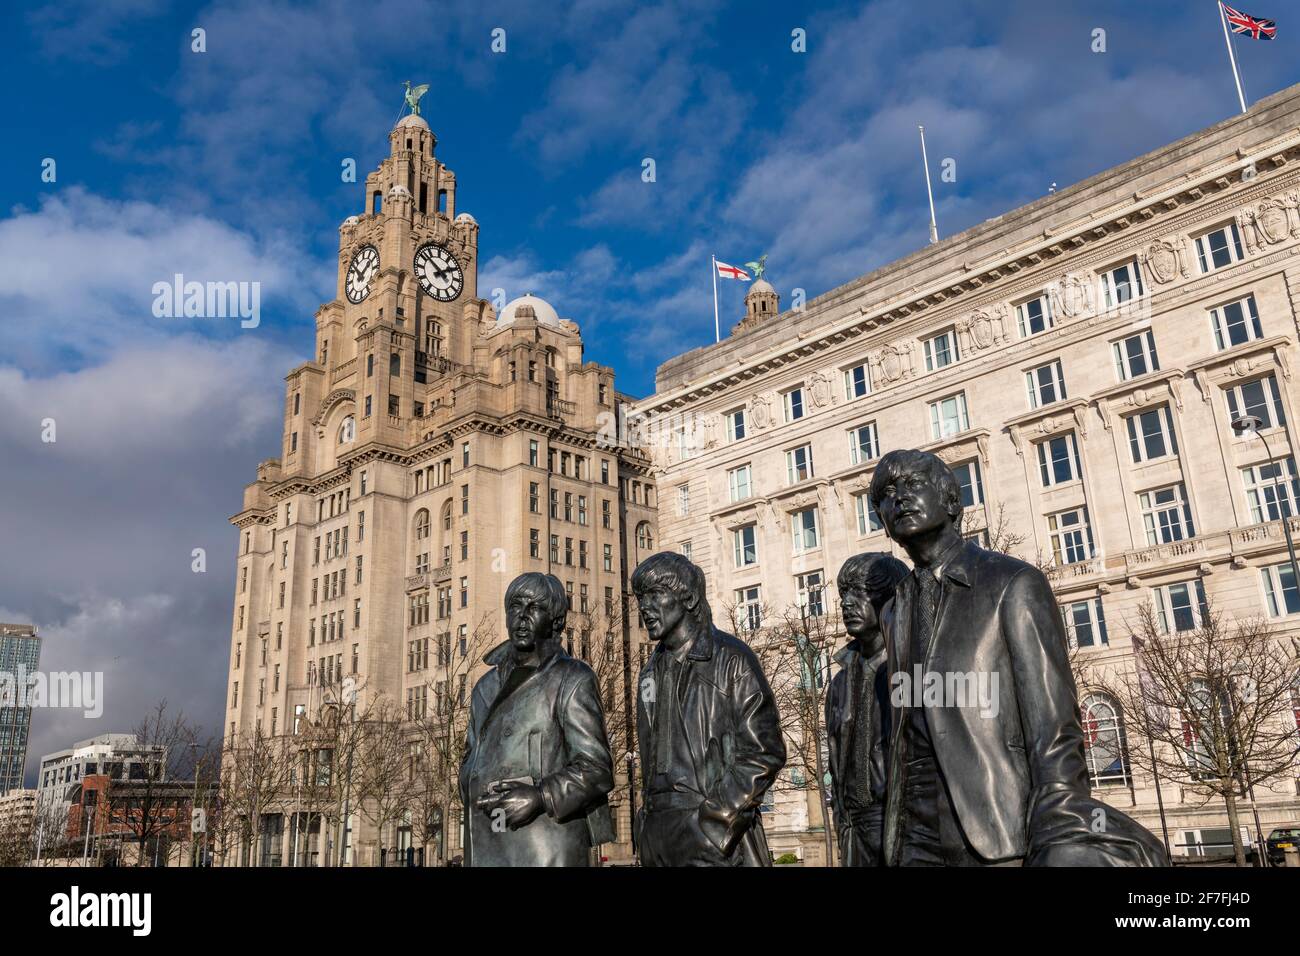 La statua in bronzo dei quattro Beatles di Liverpool si trova sul lungomare di Liverpool, patrimonio dell'umanità dell'UNESCO, Liverpool, Merseyside, Inghilterra, Regno Unito Foto Stock